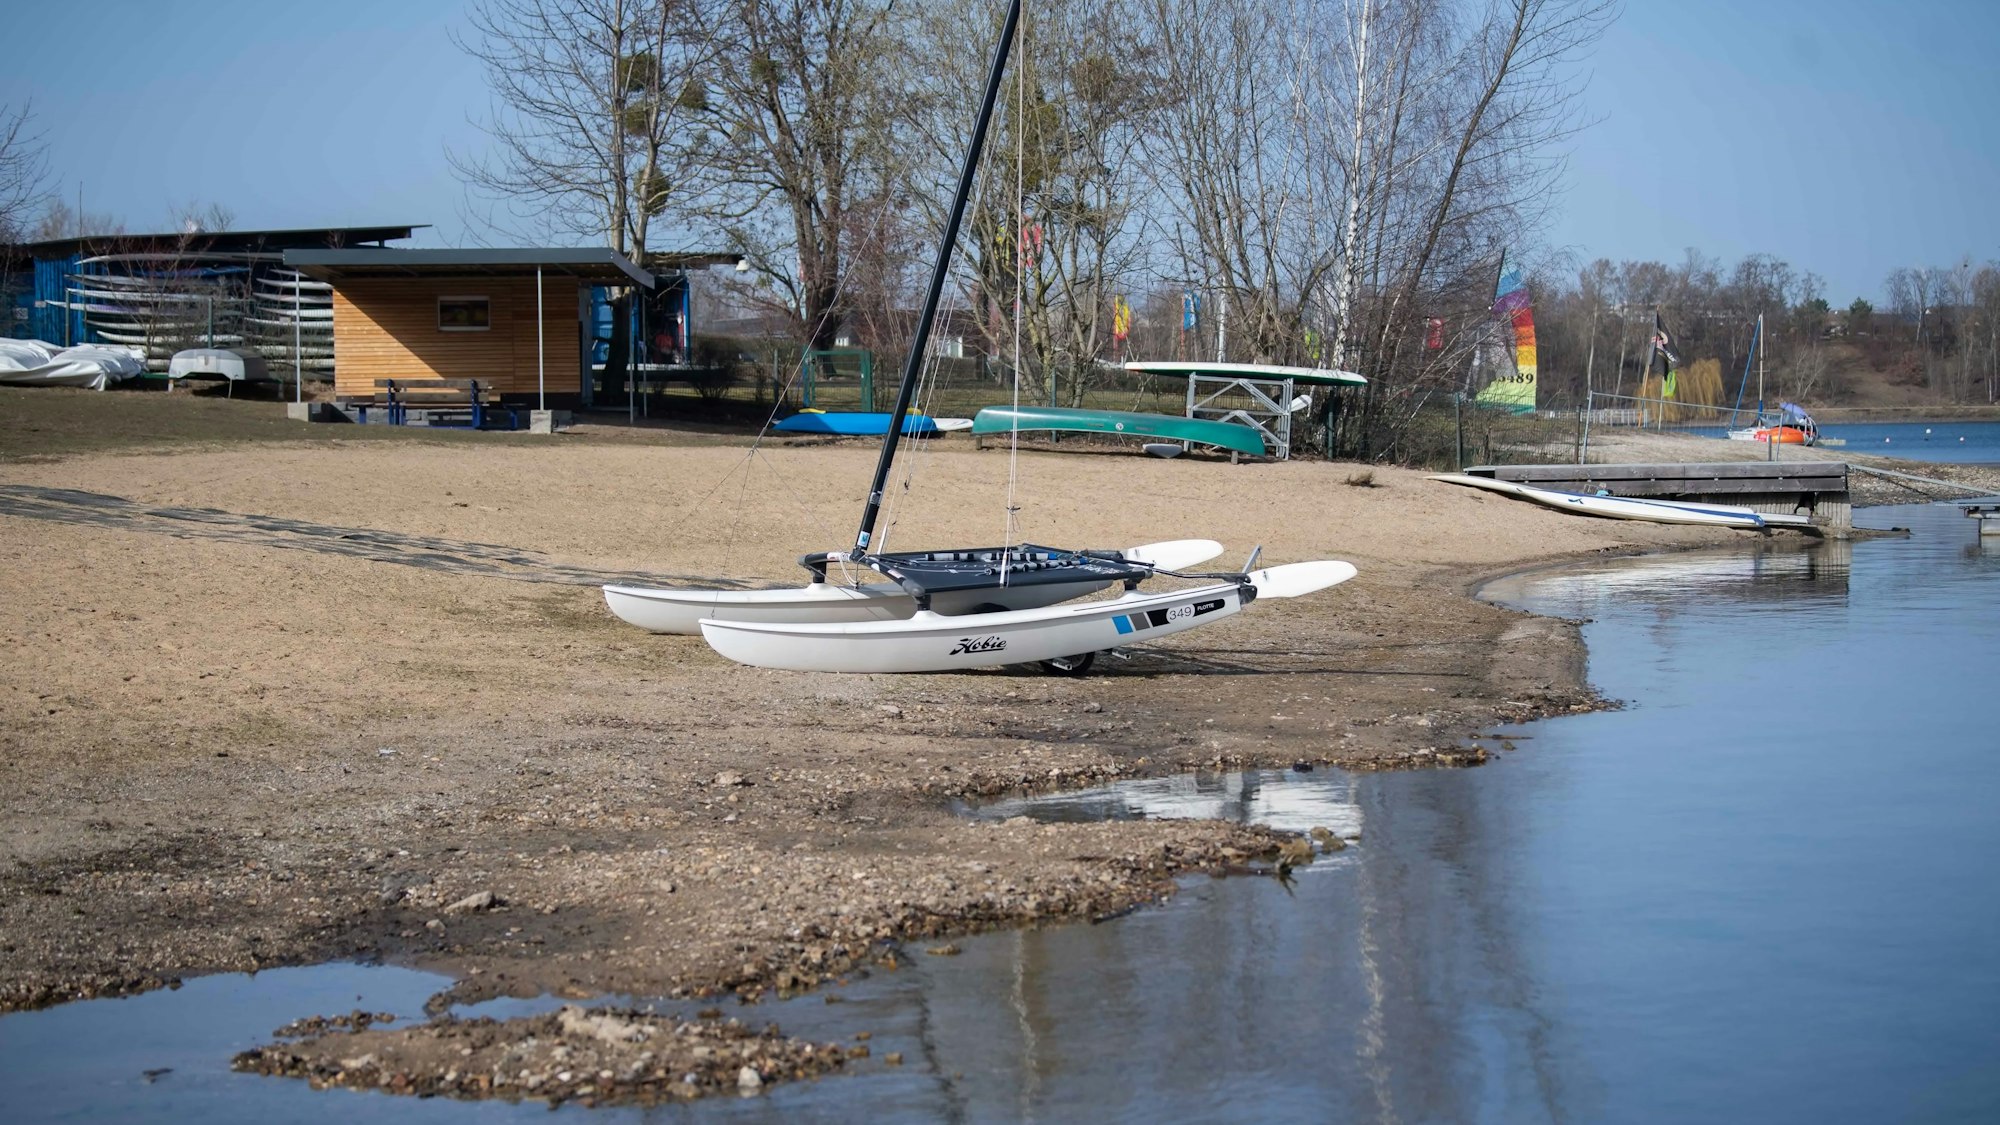 Ein Boot liegt auf dem Trockenen am Rand des Zülpicher Sees. Das Wasser ist zurückgegangen, sodass der Seeboden zu sehen ist.